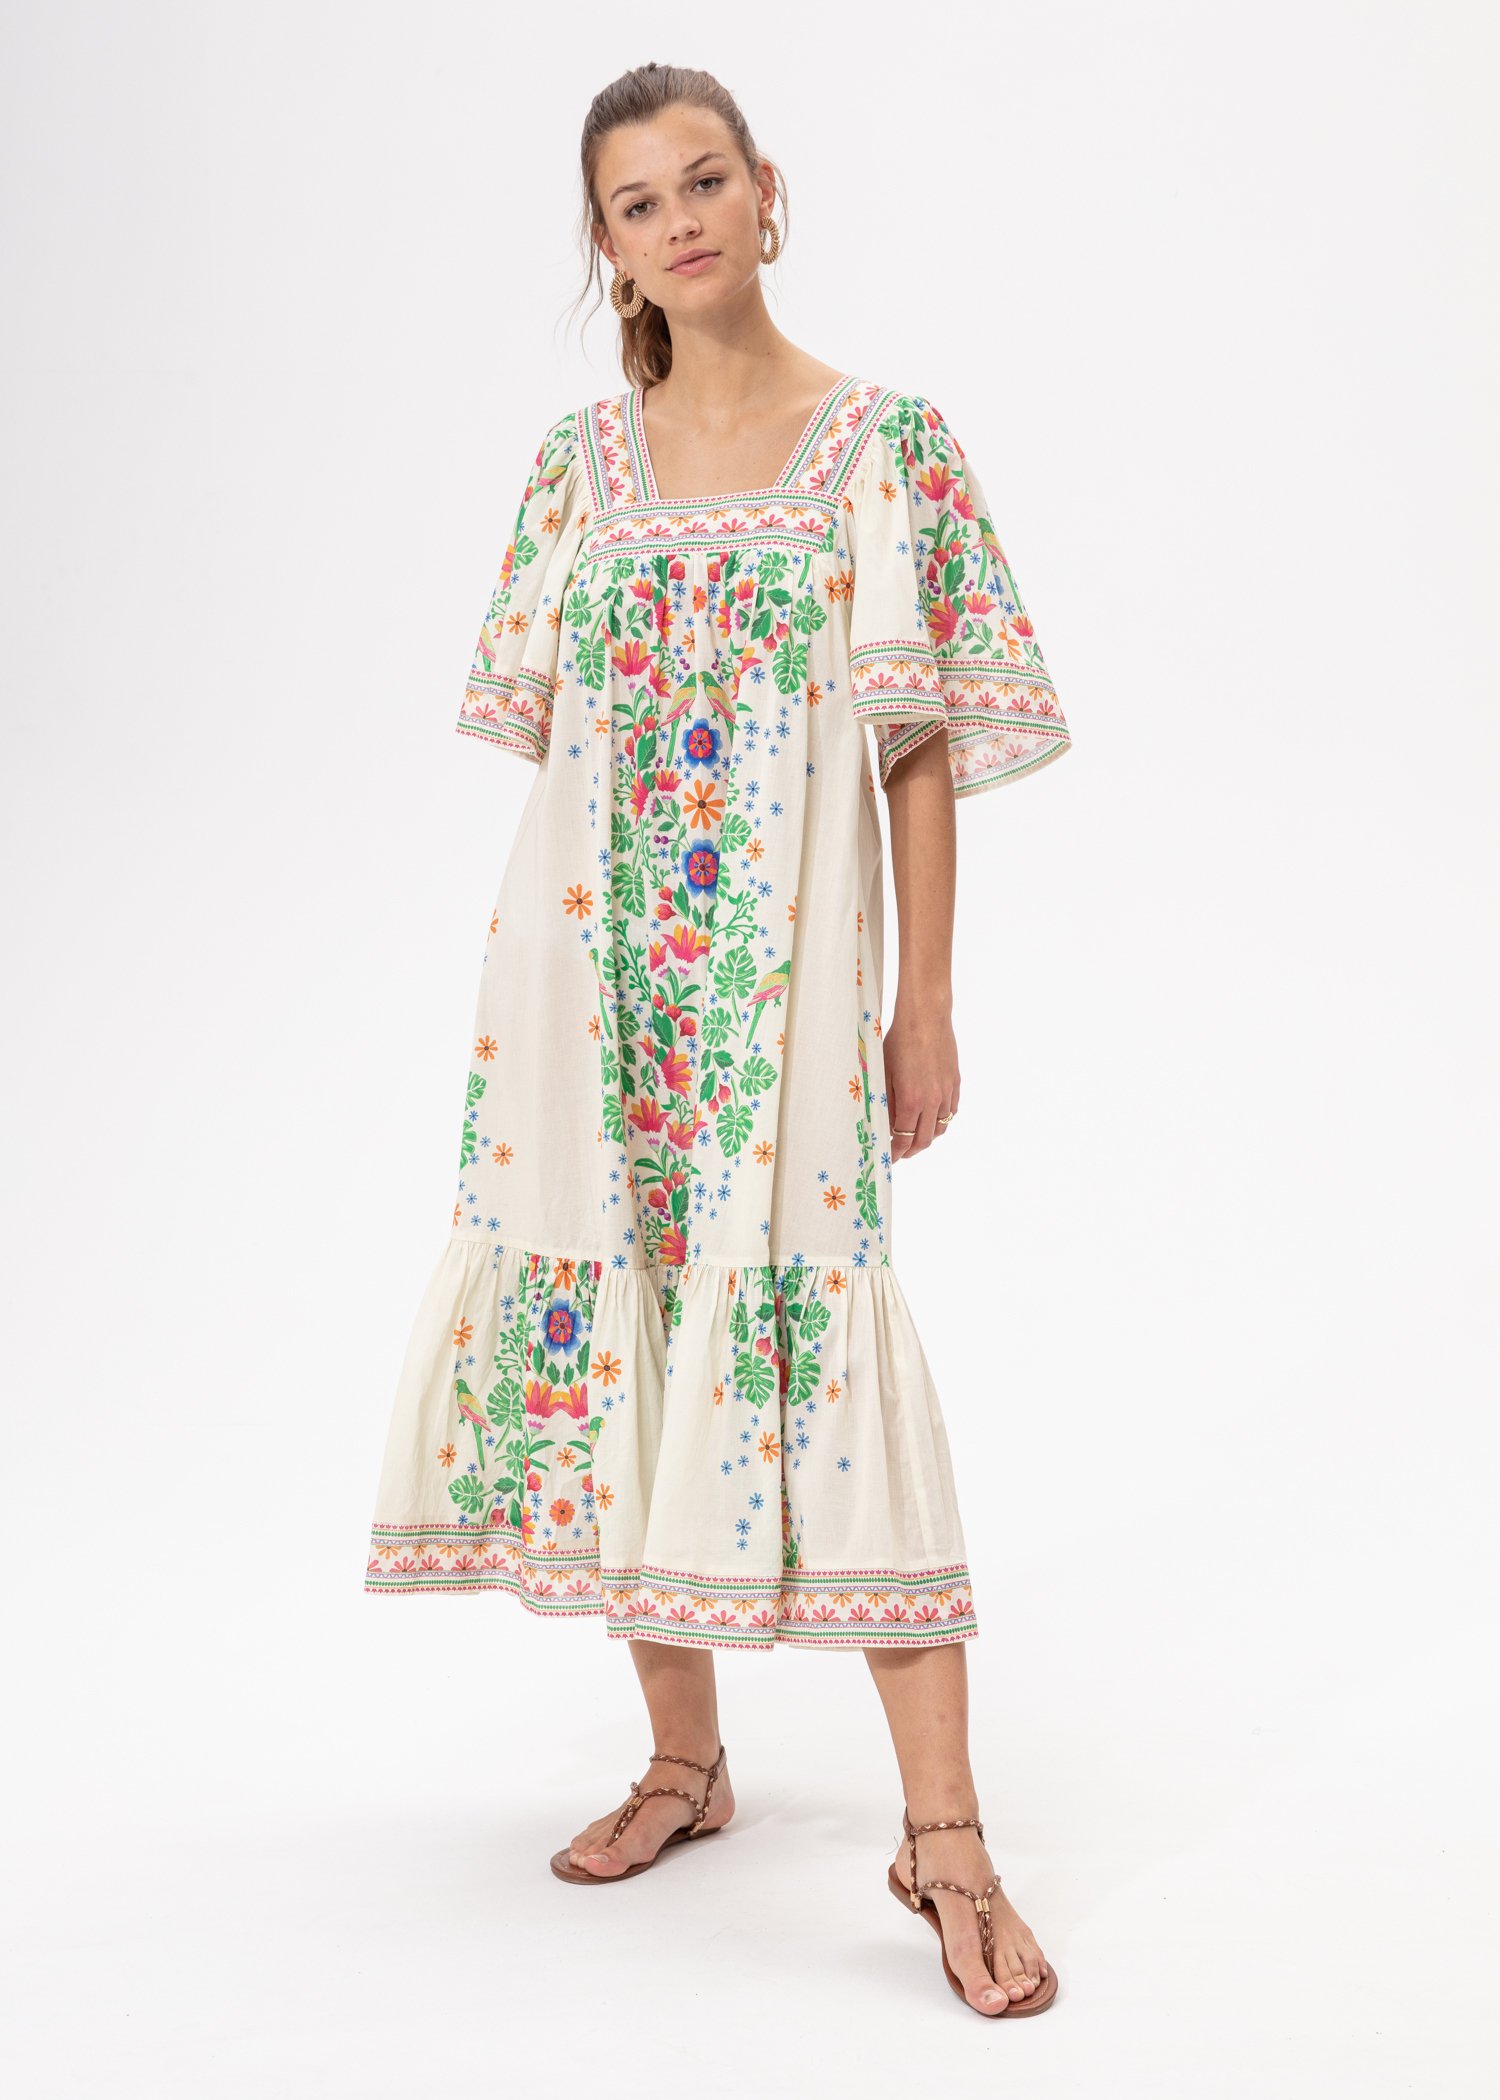 Cotton floral dress